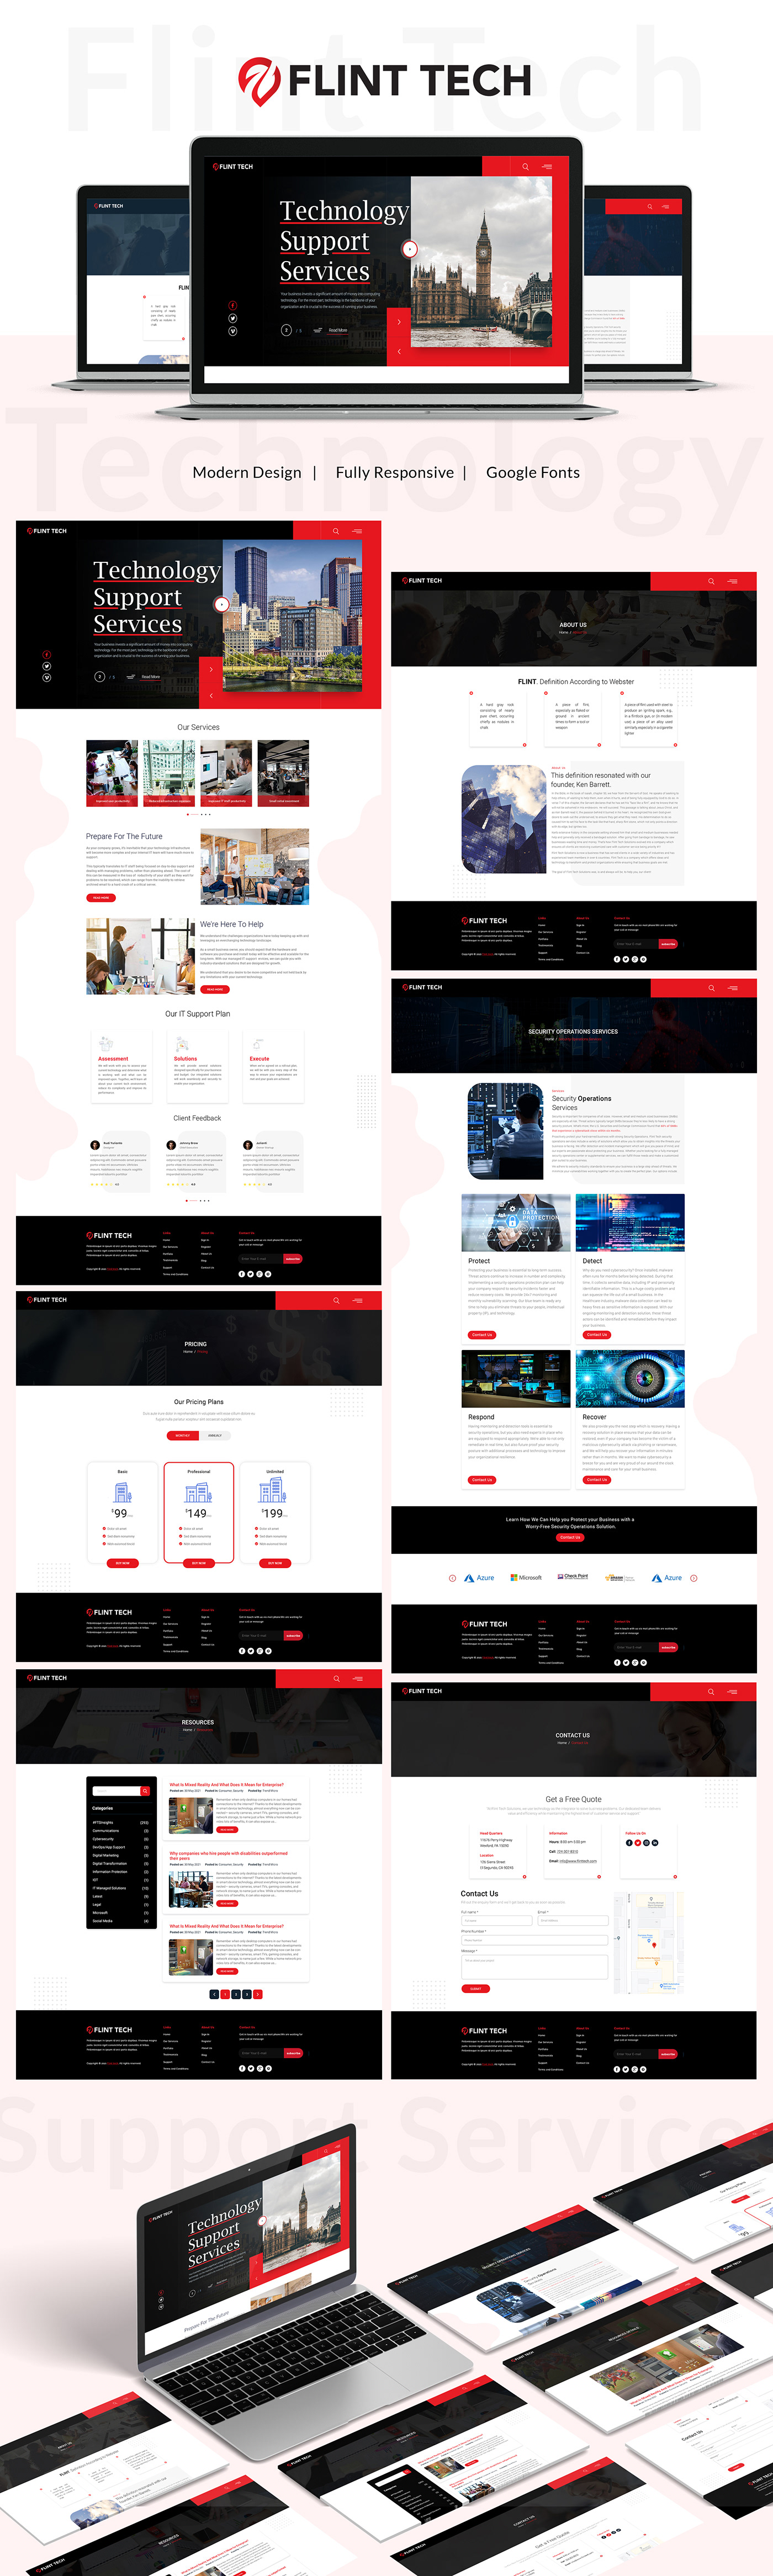 website layout